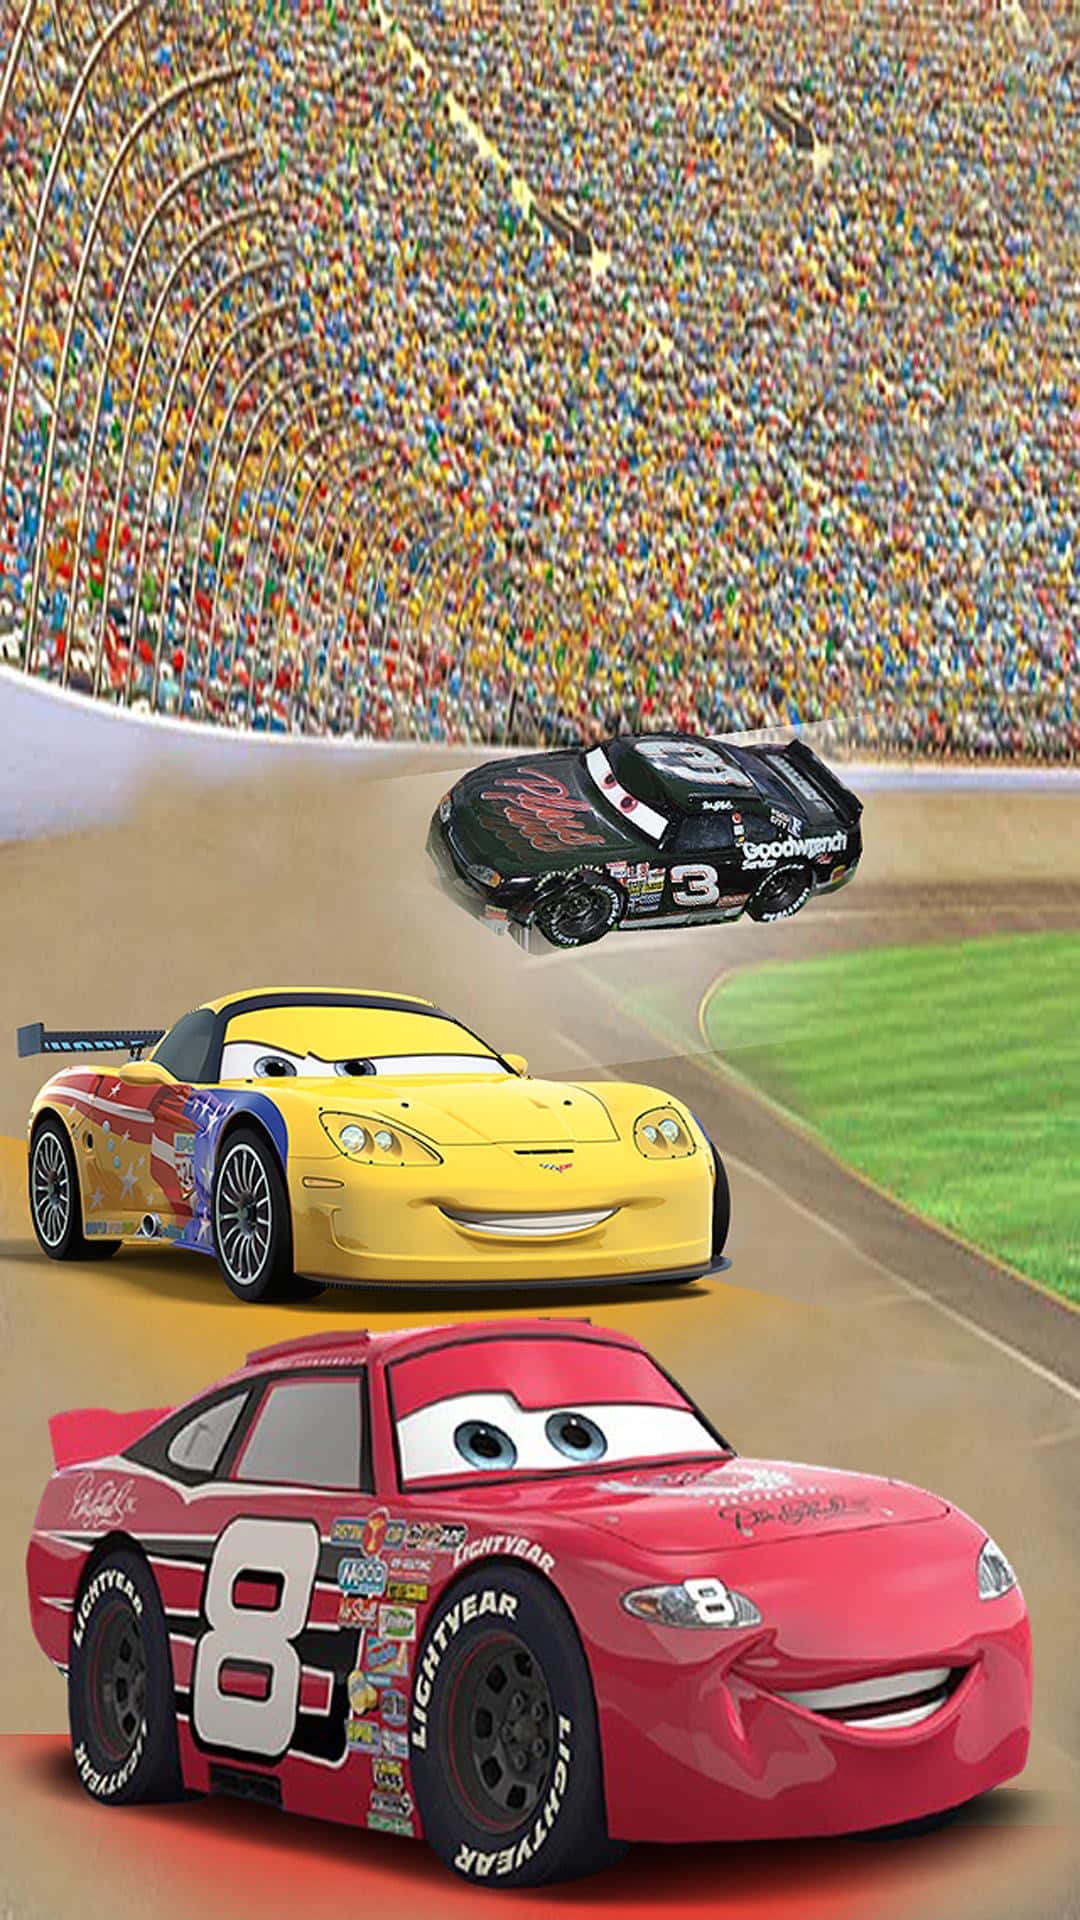 Disneybilar Racear I En Arena.